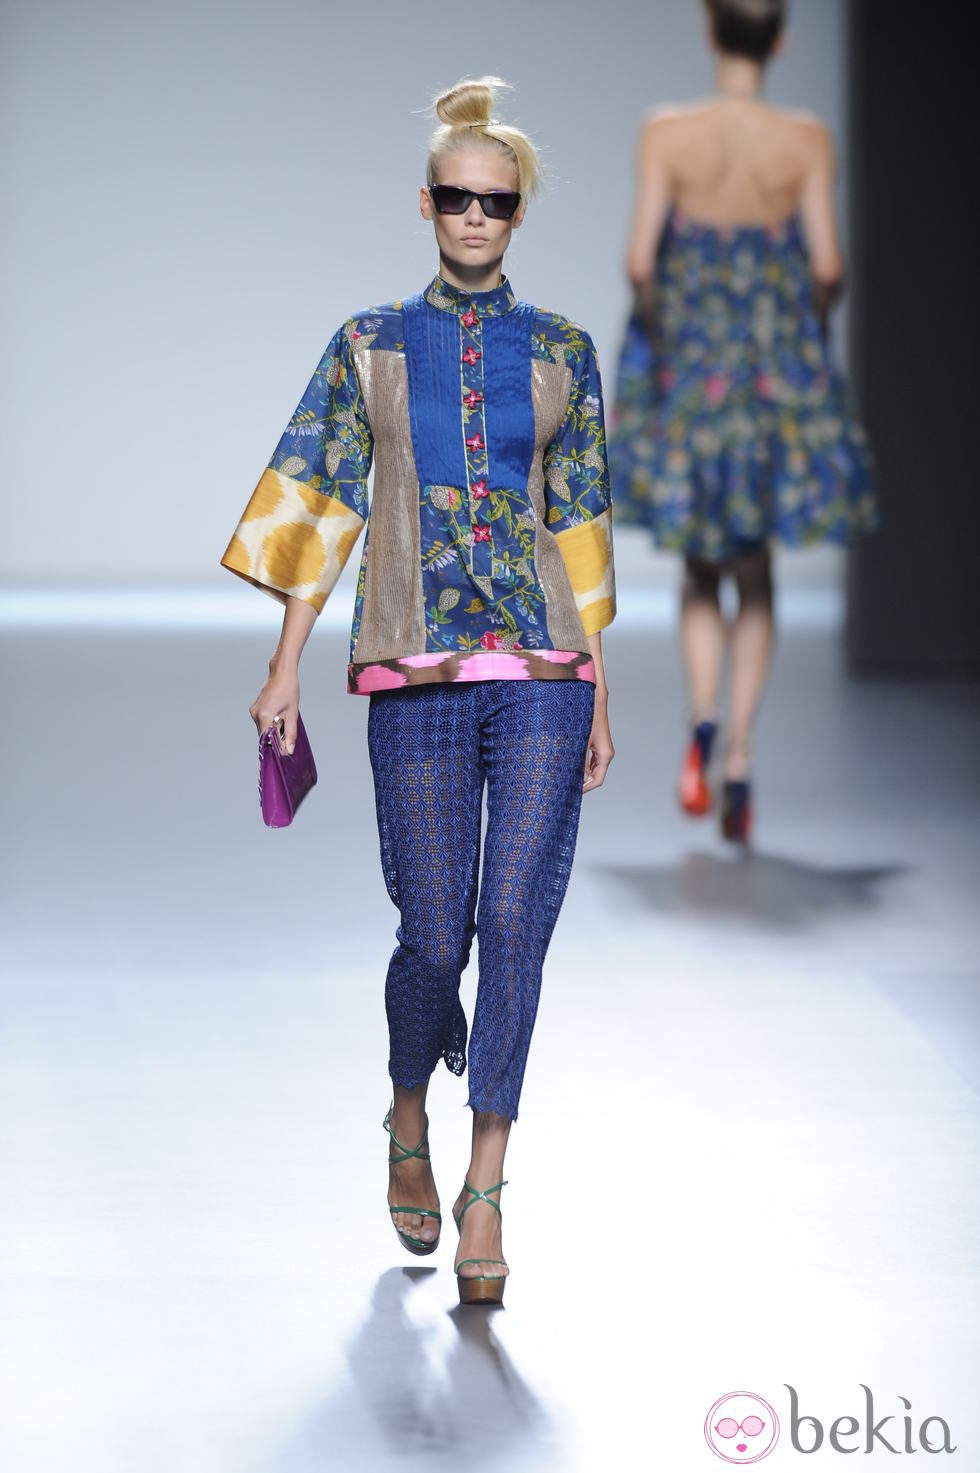 Pantalón azul marino de encaje y parte de arriba tipo kimono de la colección primavera-verano 2013 de Victorio&Lucchino